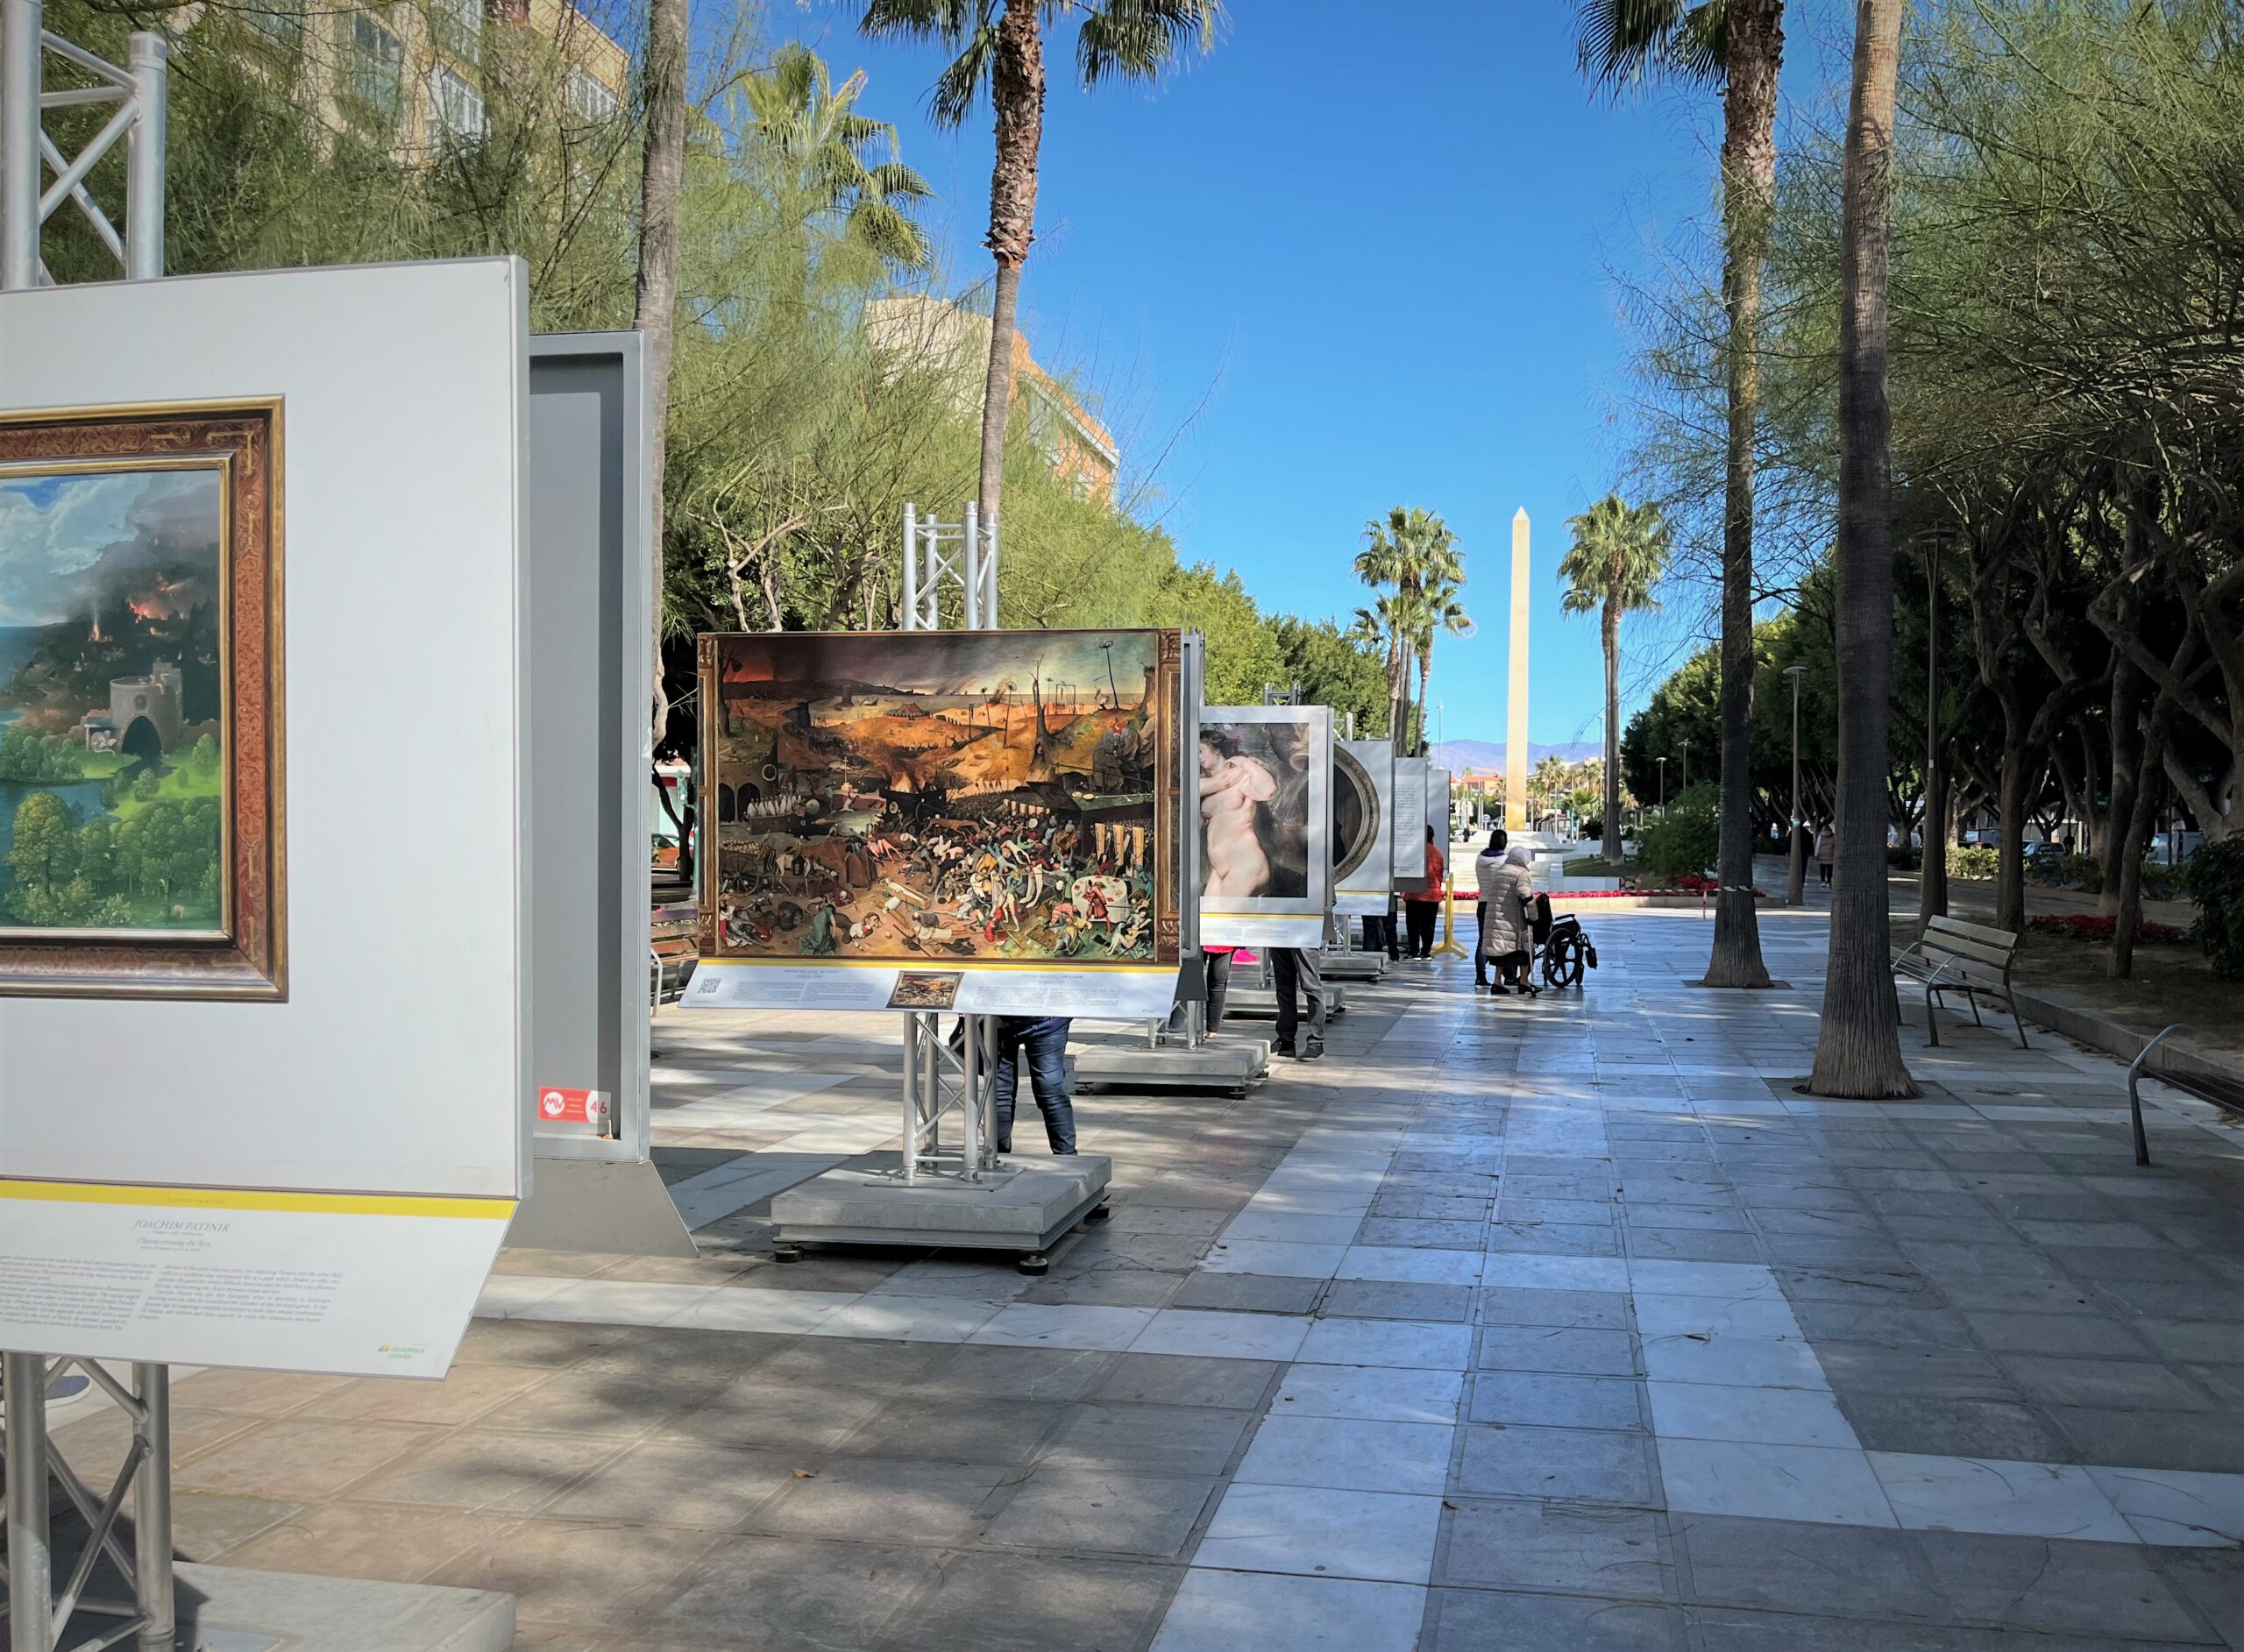 Llega a Almería la exposición ‘El Museo del Prado en las Calles’